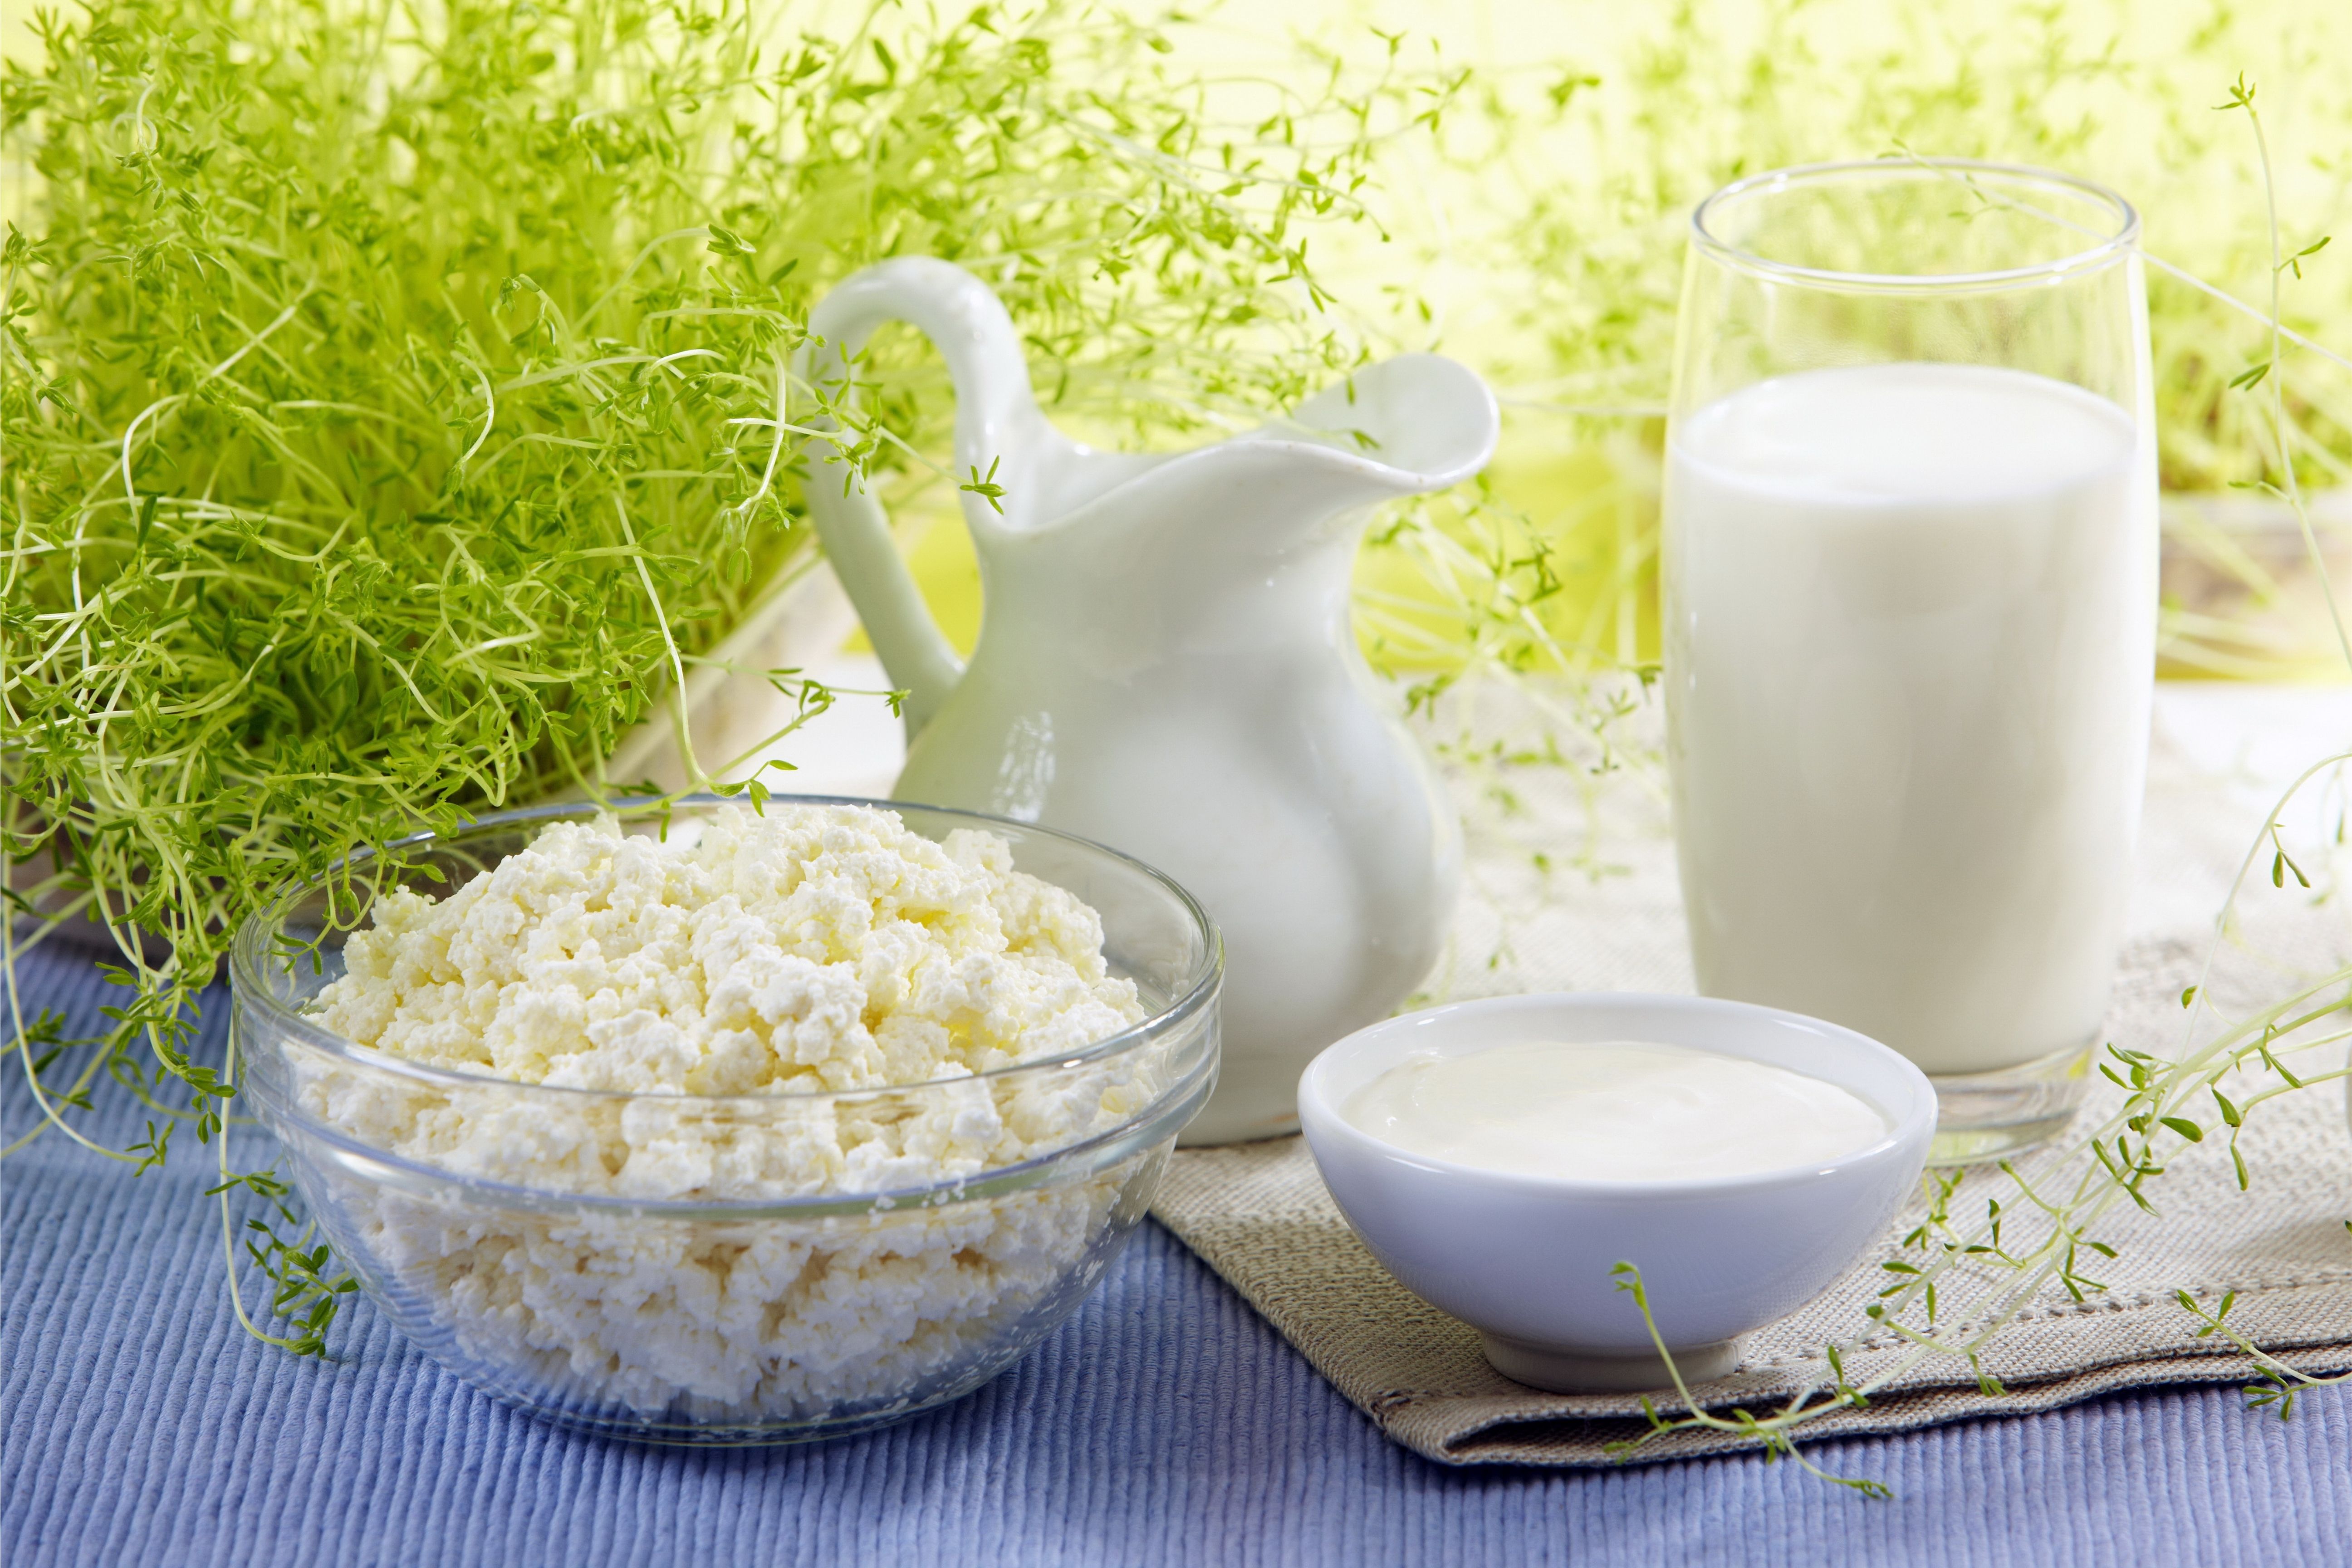 Каждый казахстанец в среднем за год потребляет 260 литров молочной продукции